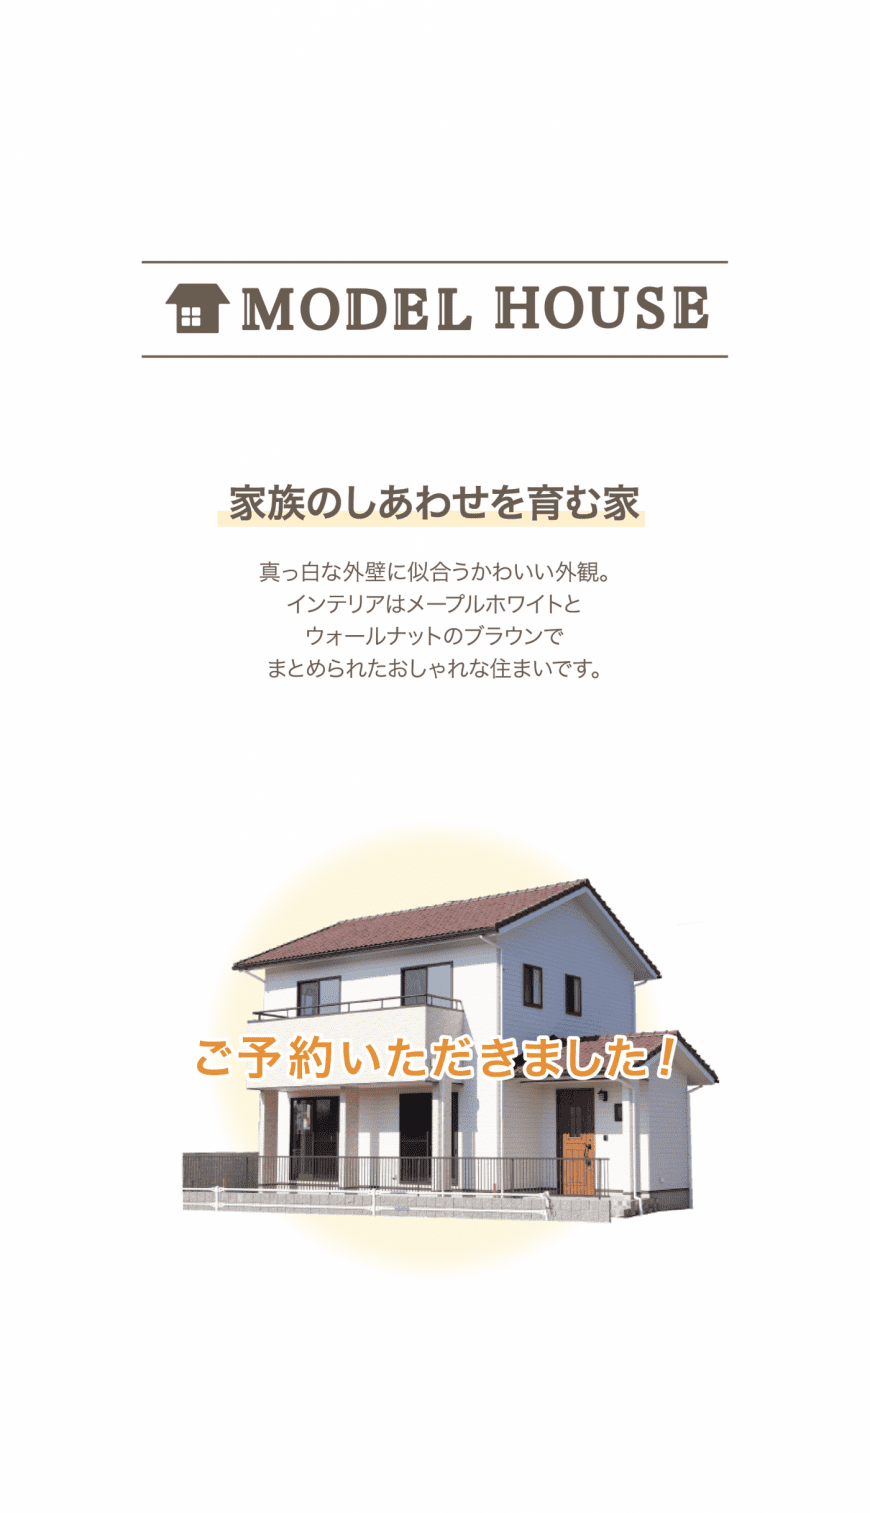 ”モデルハウス”